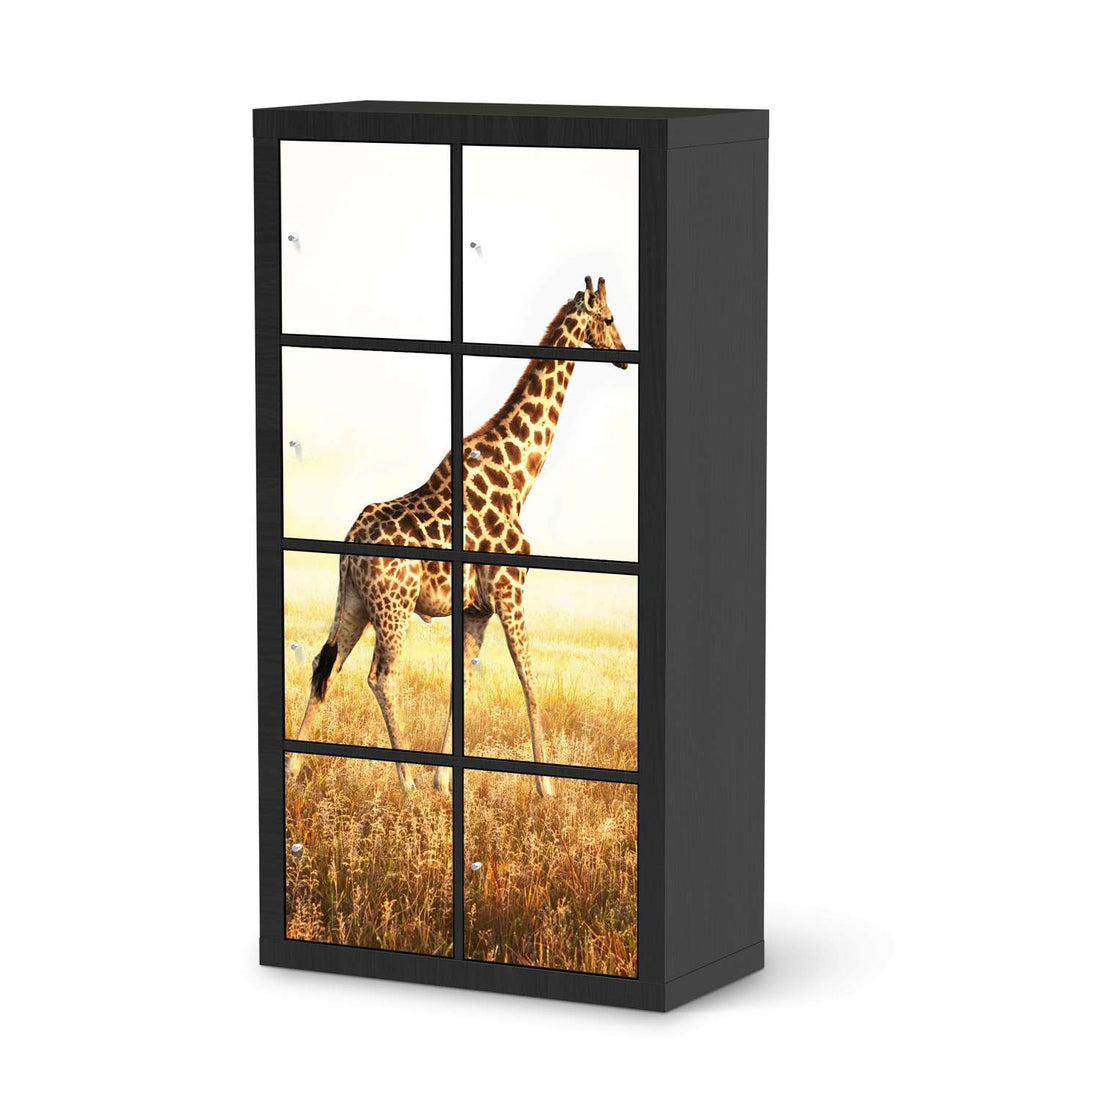 Folie für Möbel Savanna Giraffe - IKEA Kallax Regal 8 Türen - schwarz